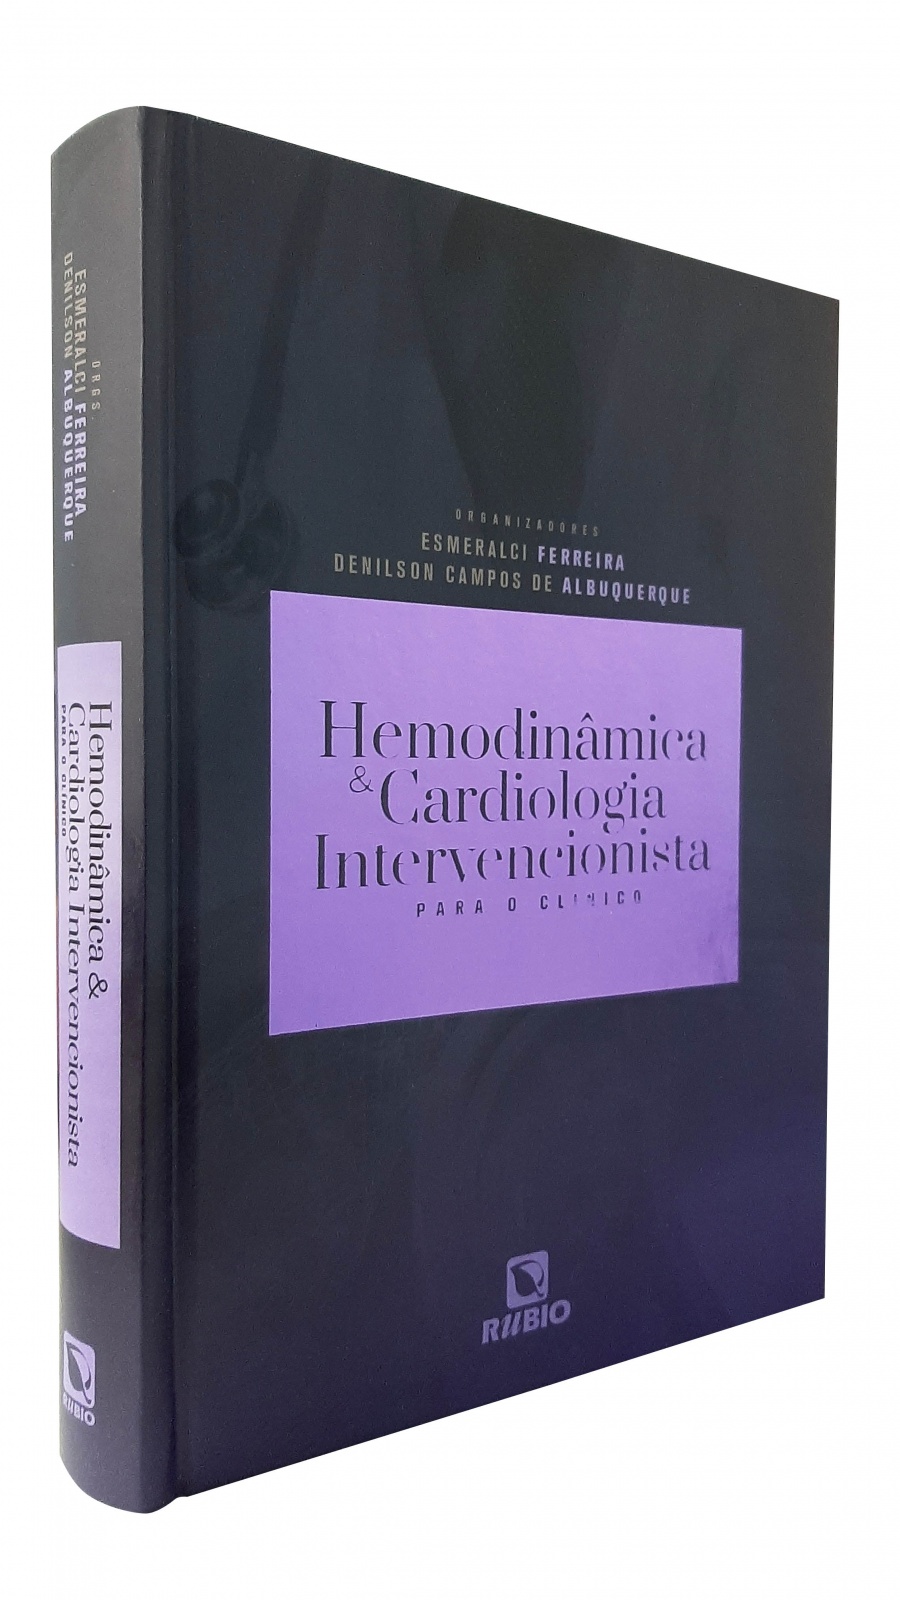 Hemodinâmica & Cardiologia Intervencionista Para O Clínico